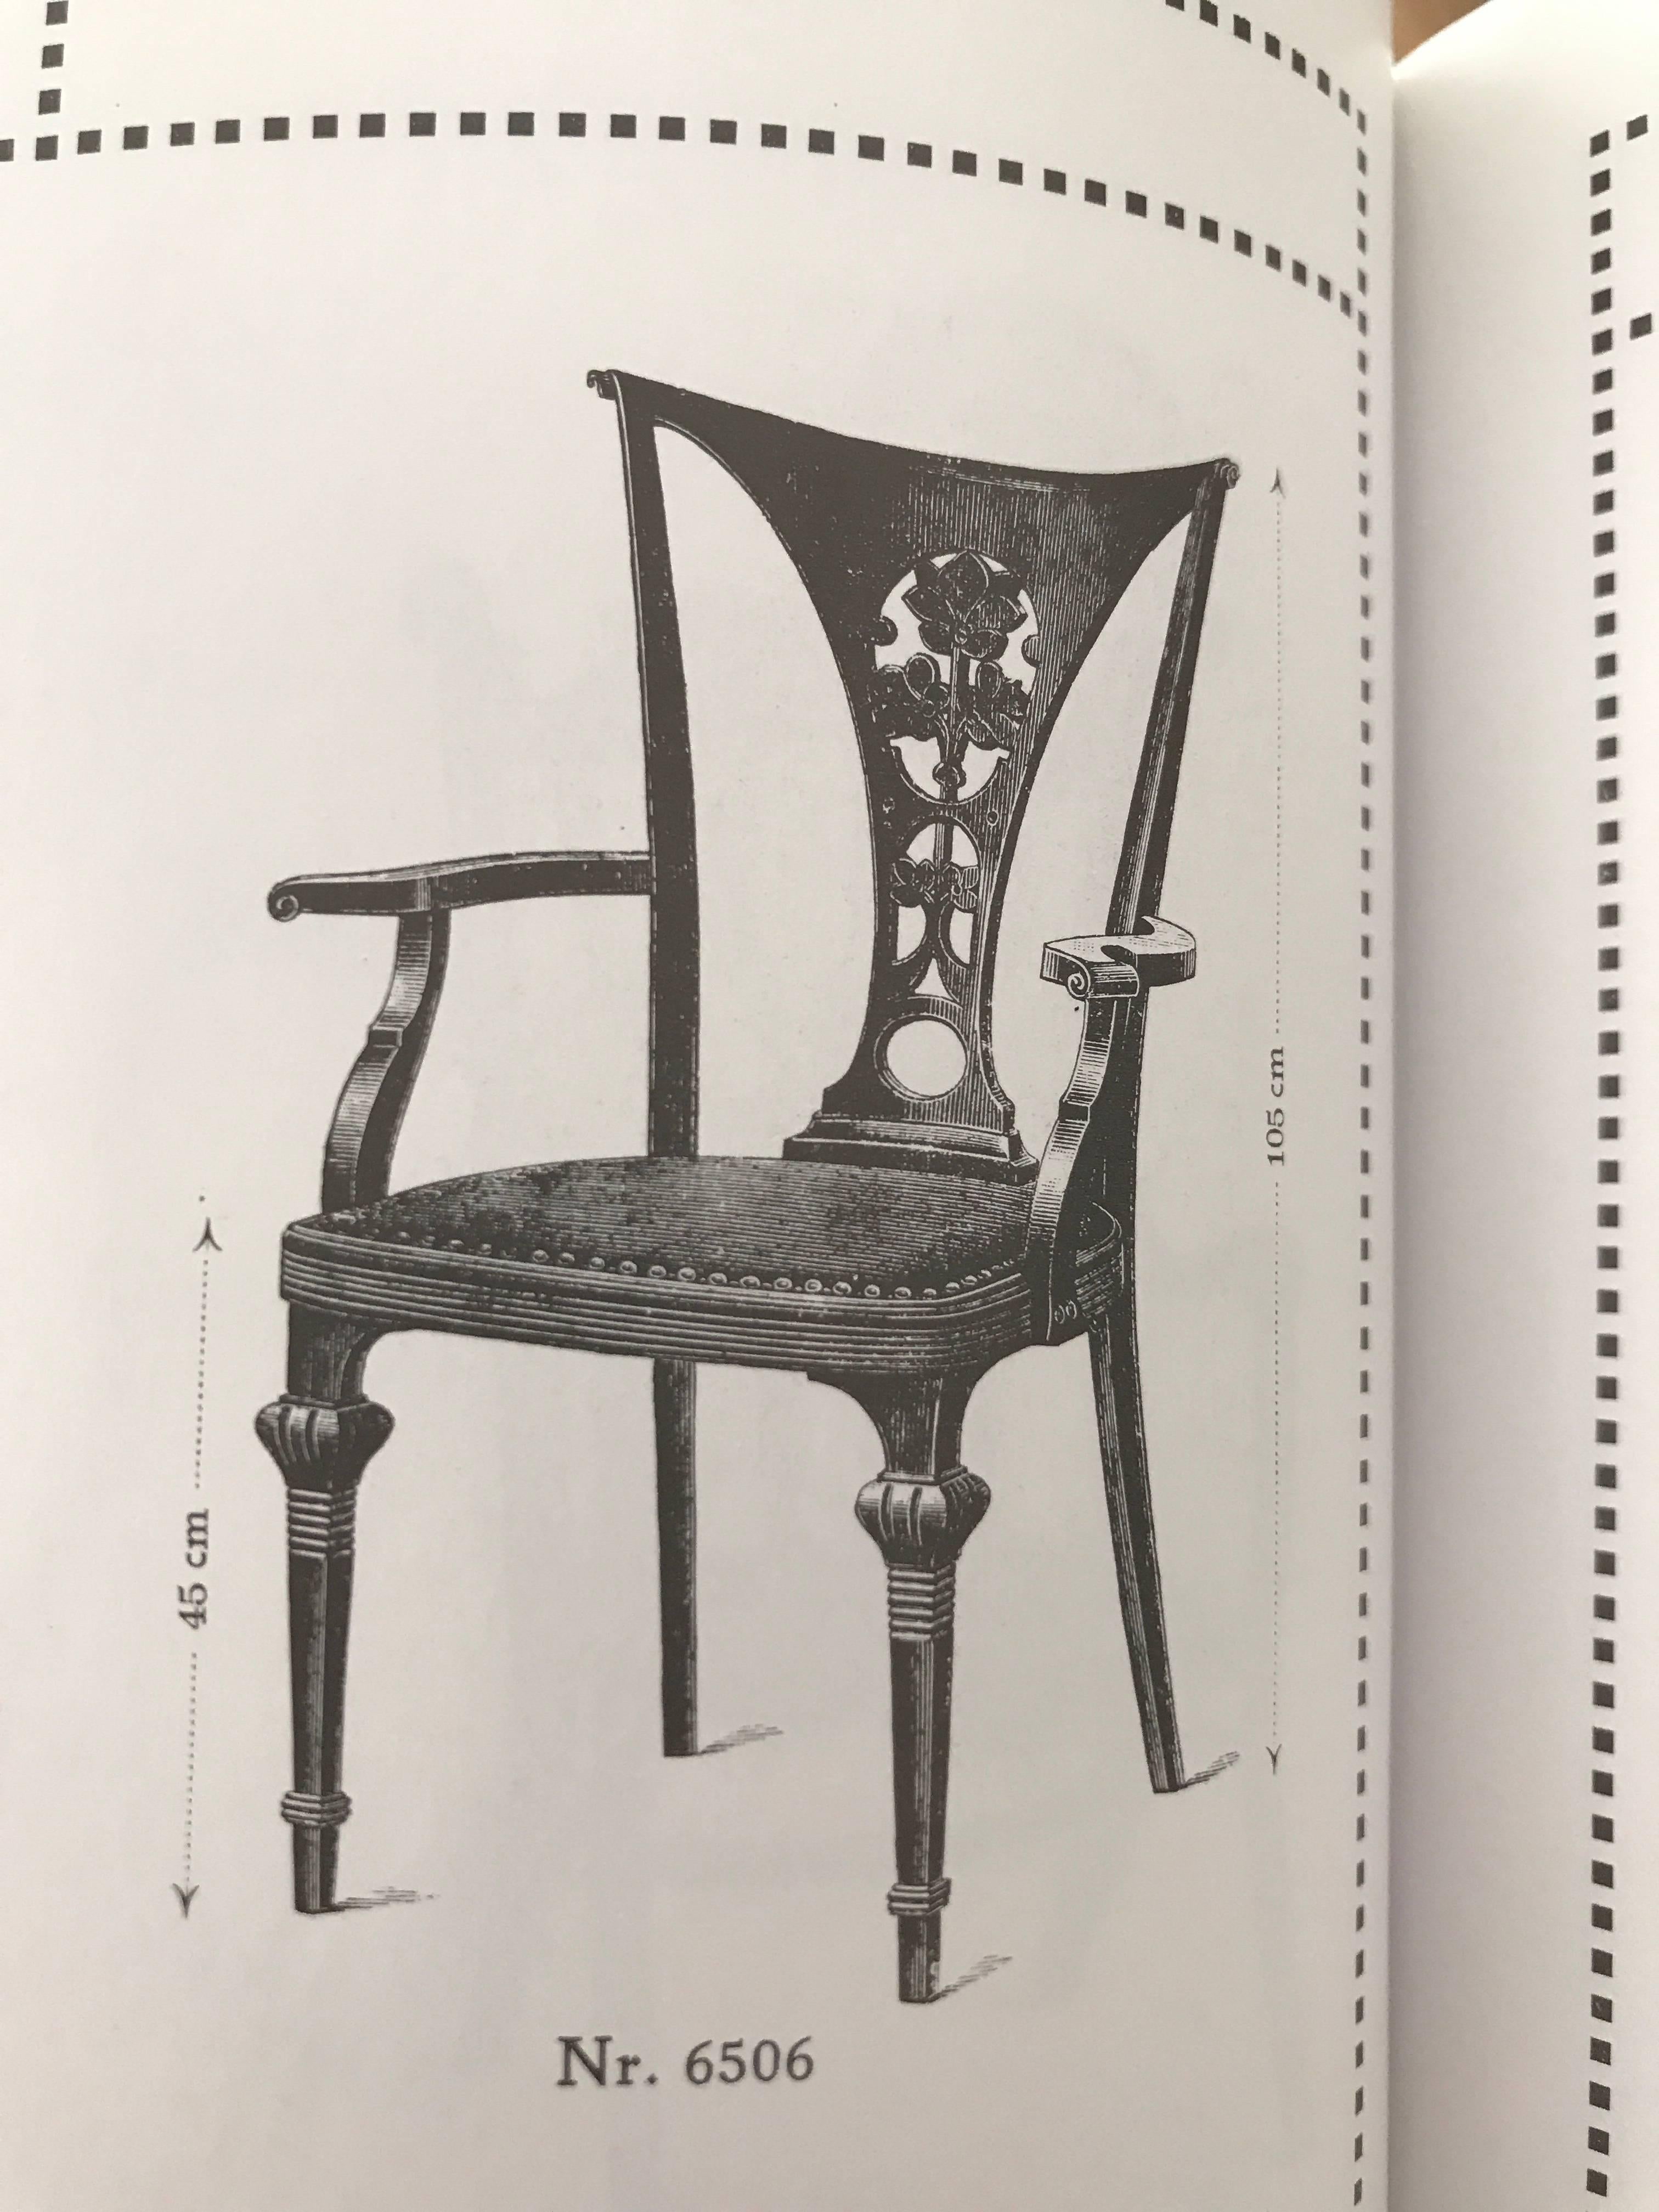 Zwei sehr seltene Thonet-Sessel mit Originalpolsterung
gestempelt Thonet
veröffentlicht im Thonet-Katalog 1911-1915 als Nr. 6506
Diese Sessel sind keine typischen Thonet-Stühle aus Bugholz und werden oft nicht als Thonet-Stühle erkannt, weshalb